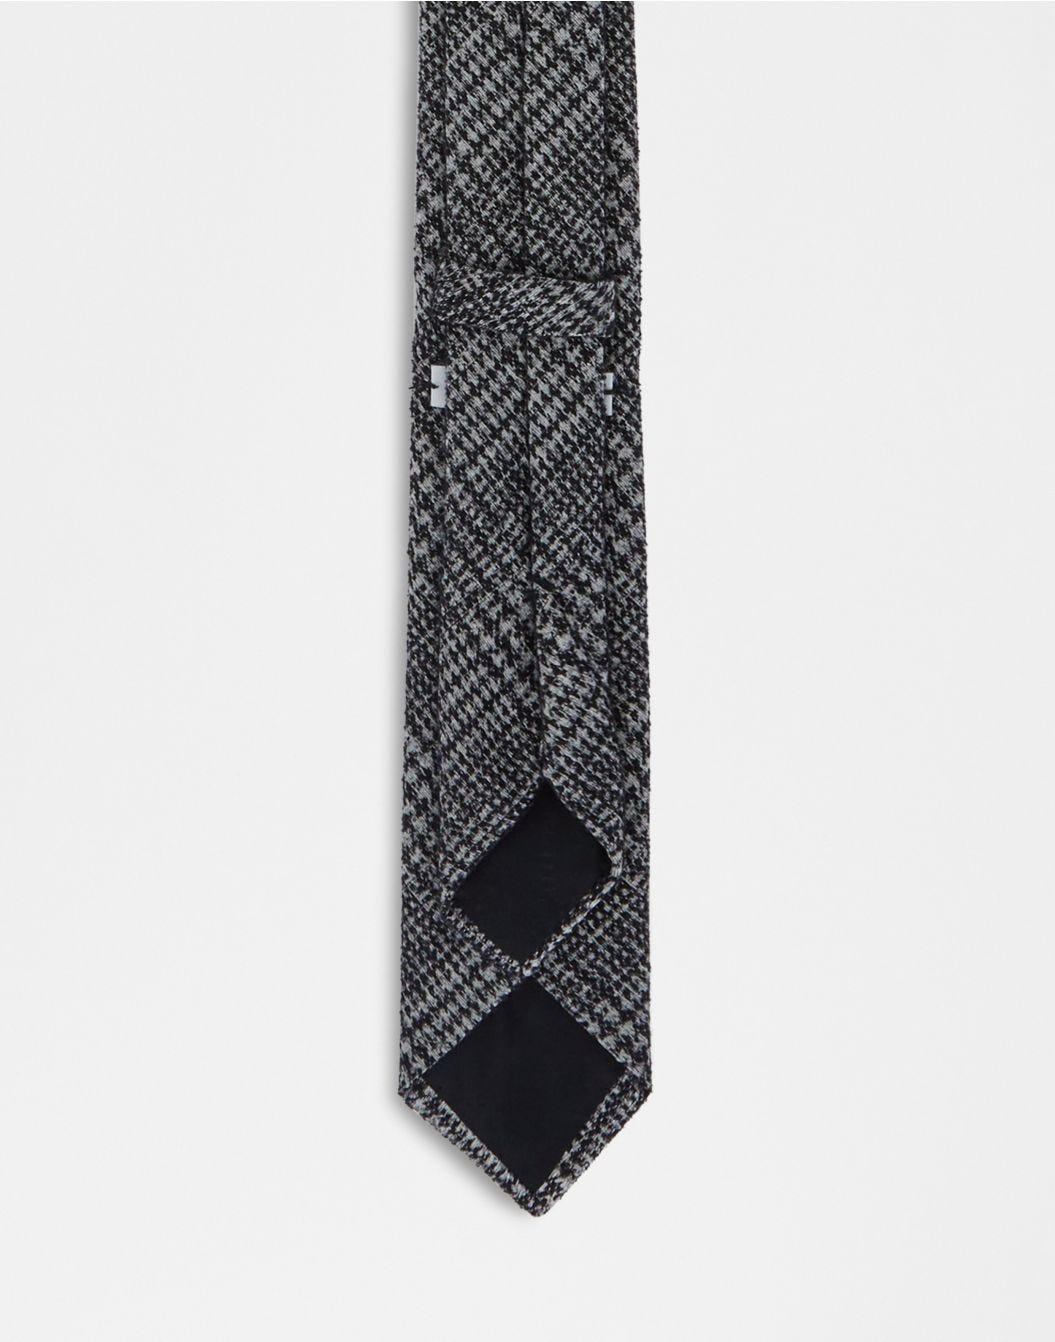 Cravatta in cotone e seta con stampa geometrica